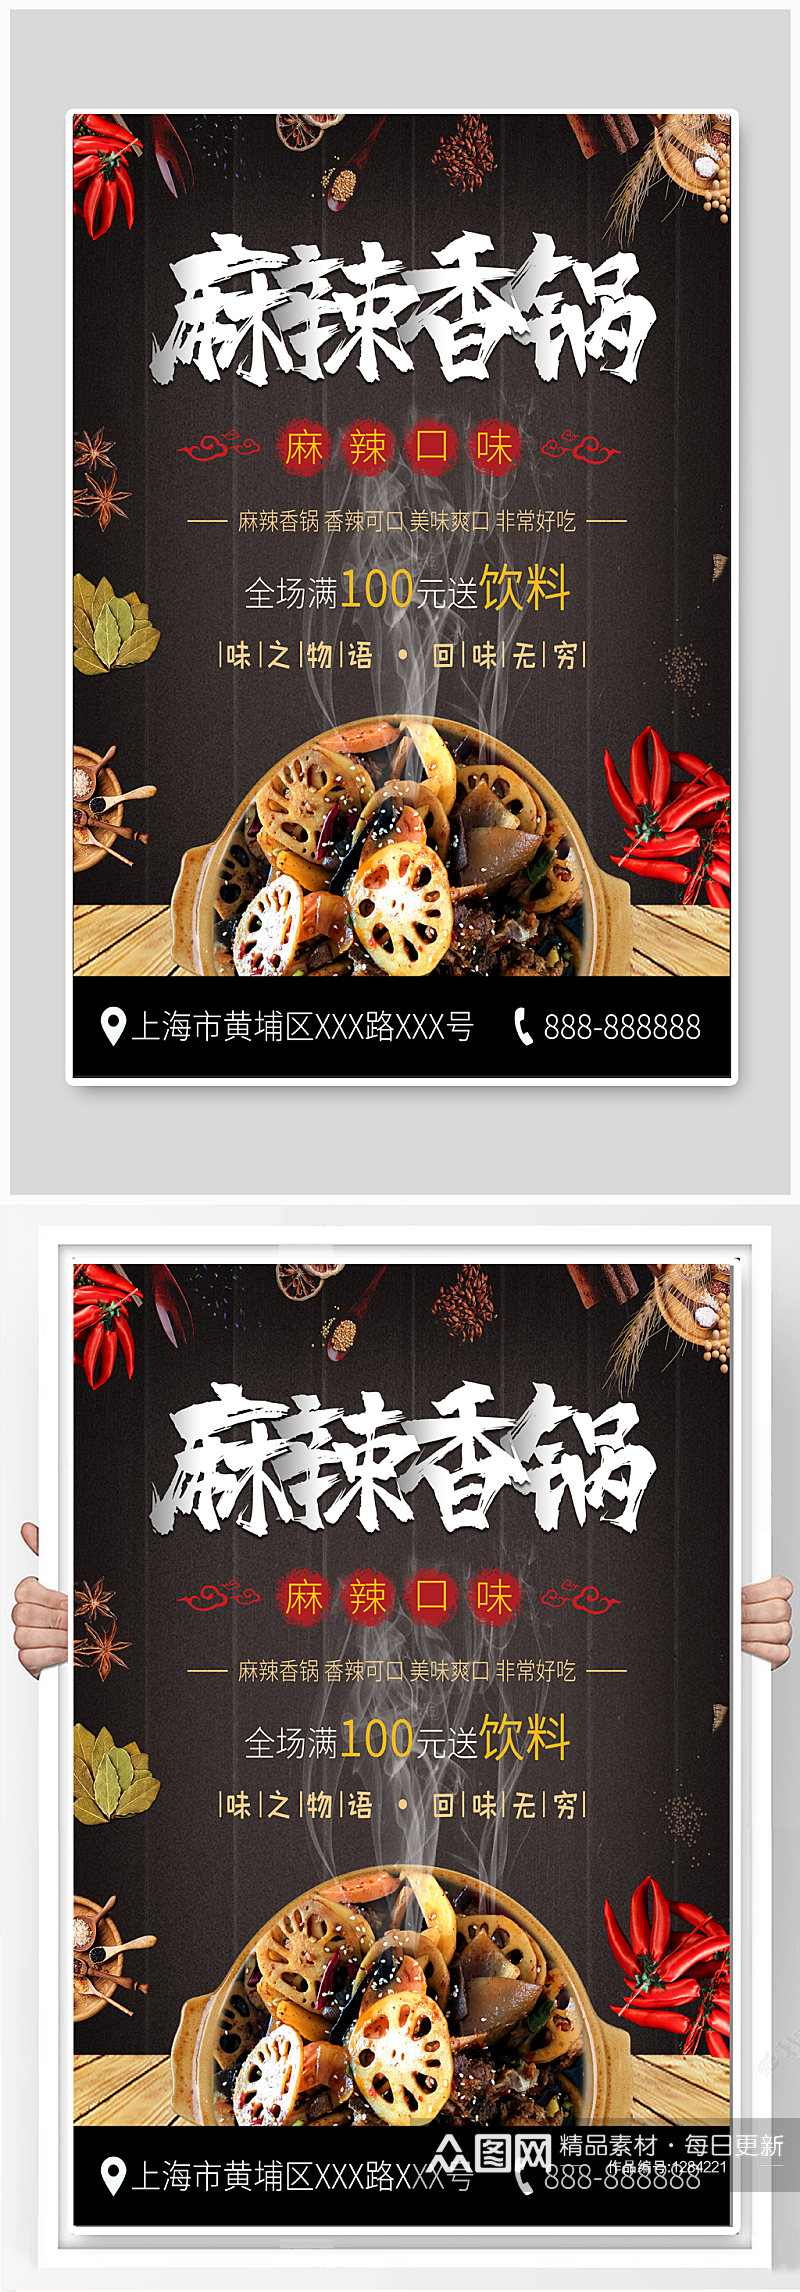 麻辣香锅美食宣传海报素材